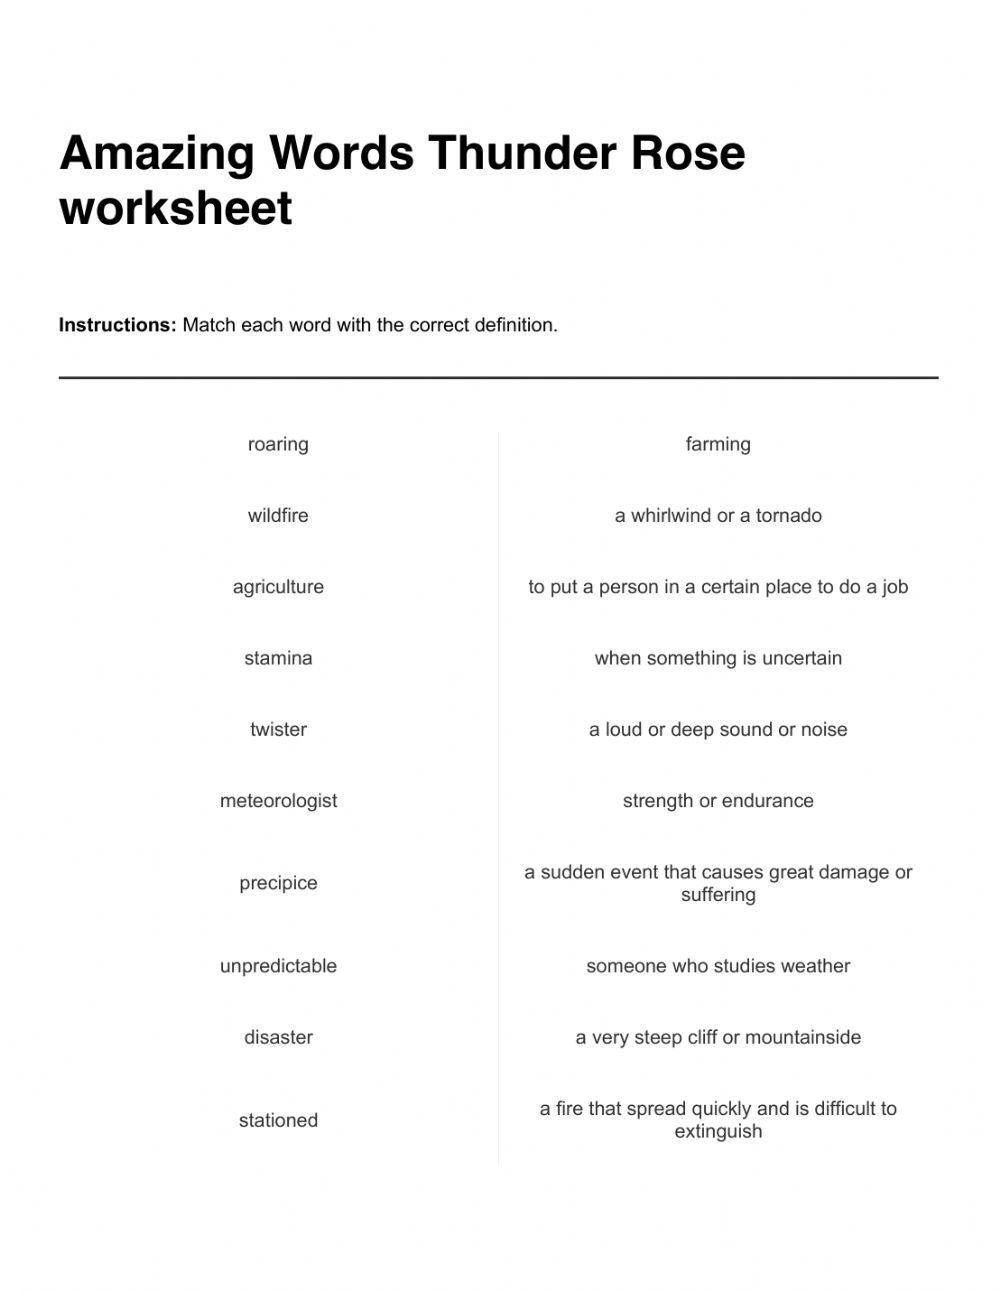 Amazing Words Thunder Rose